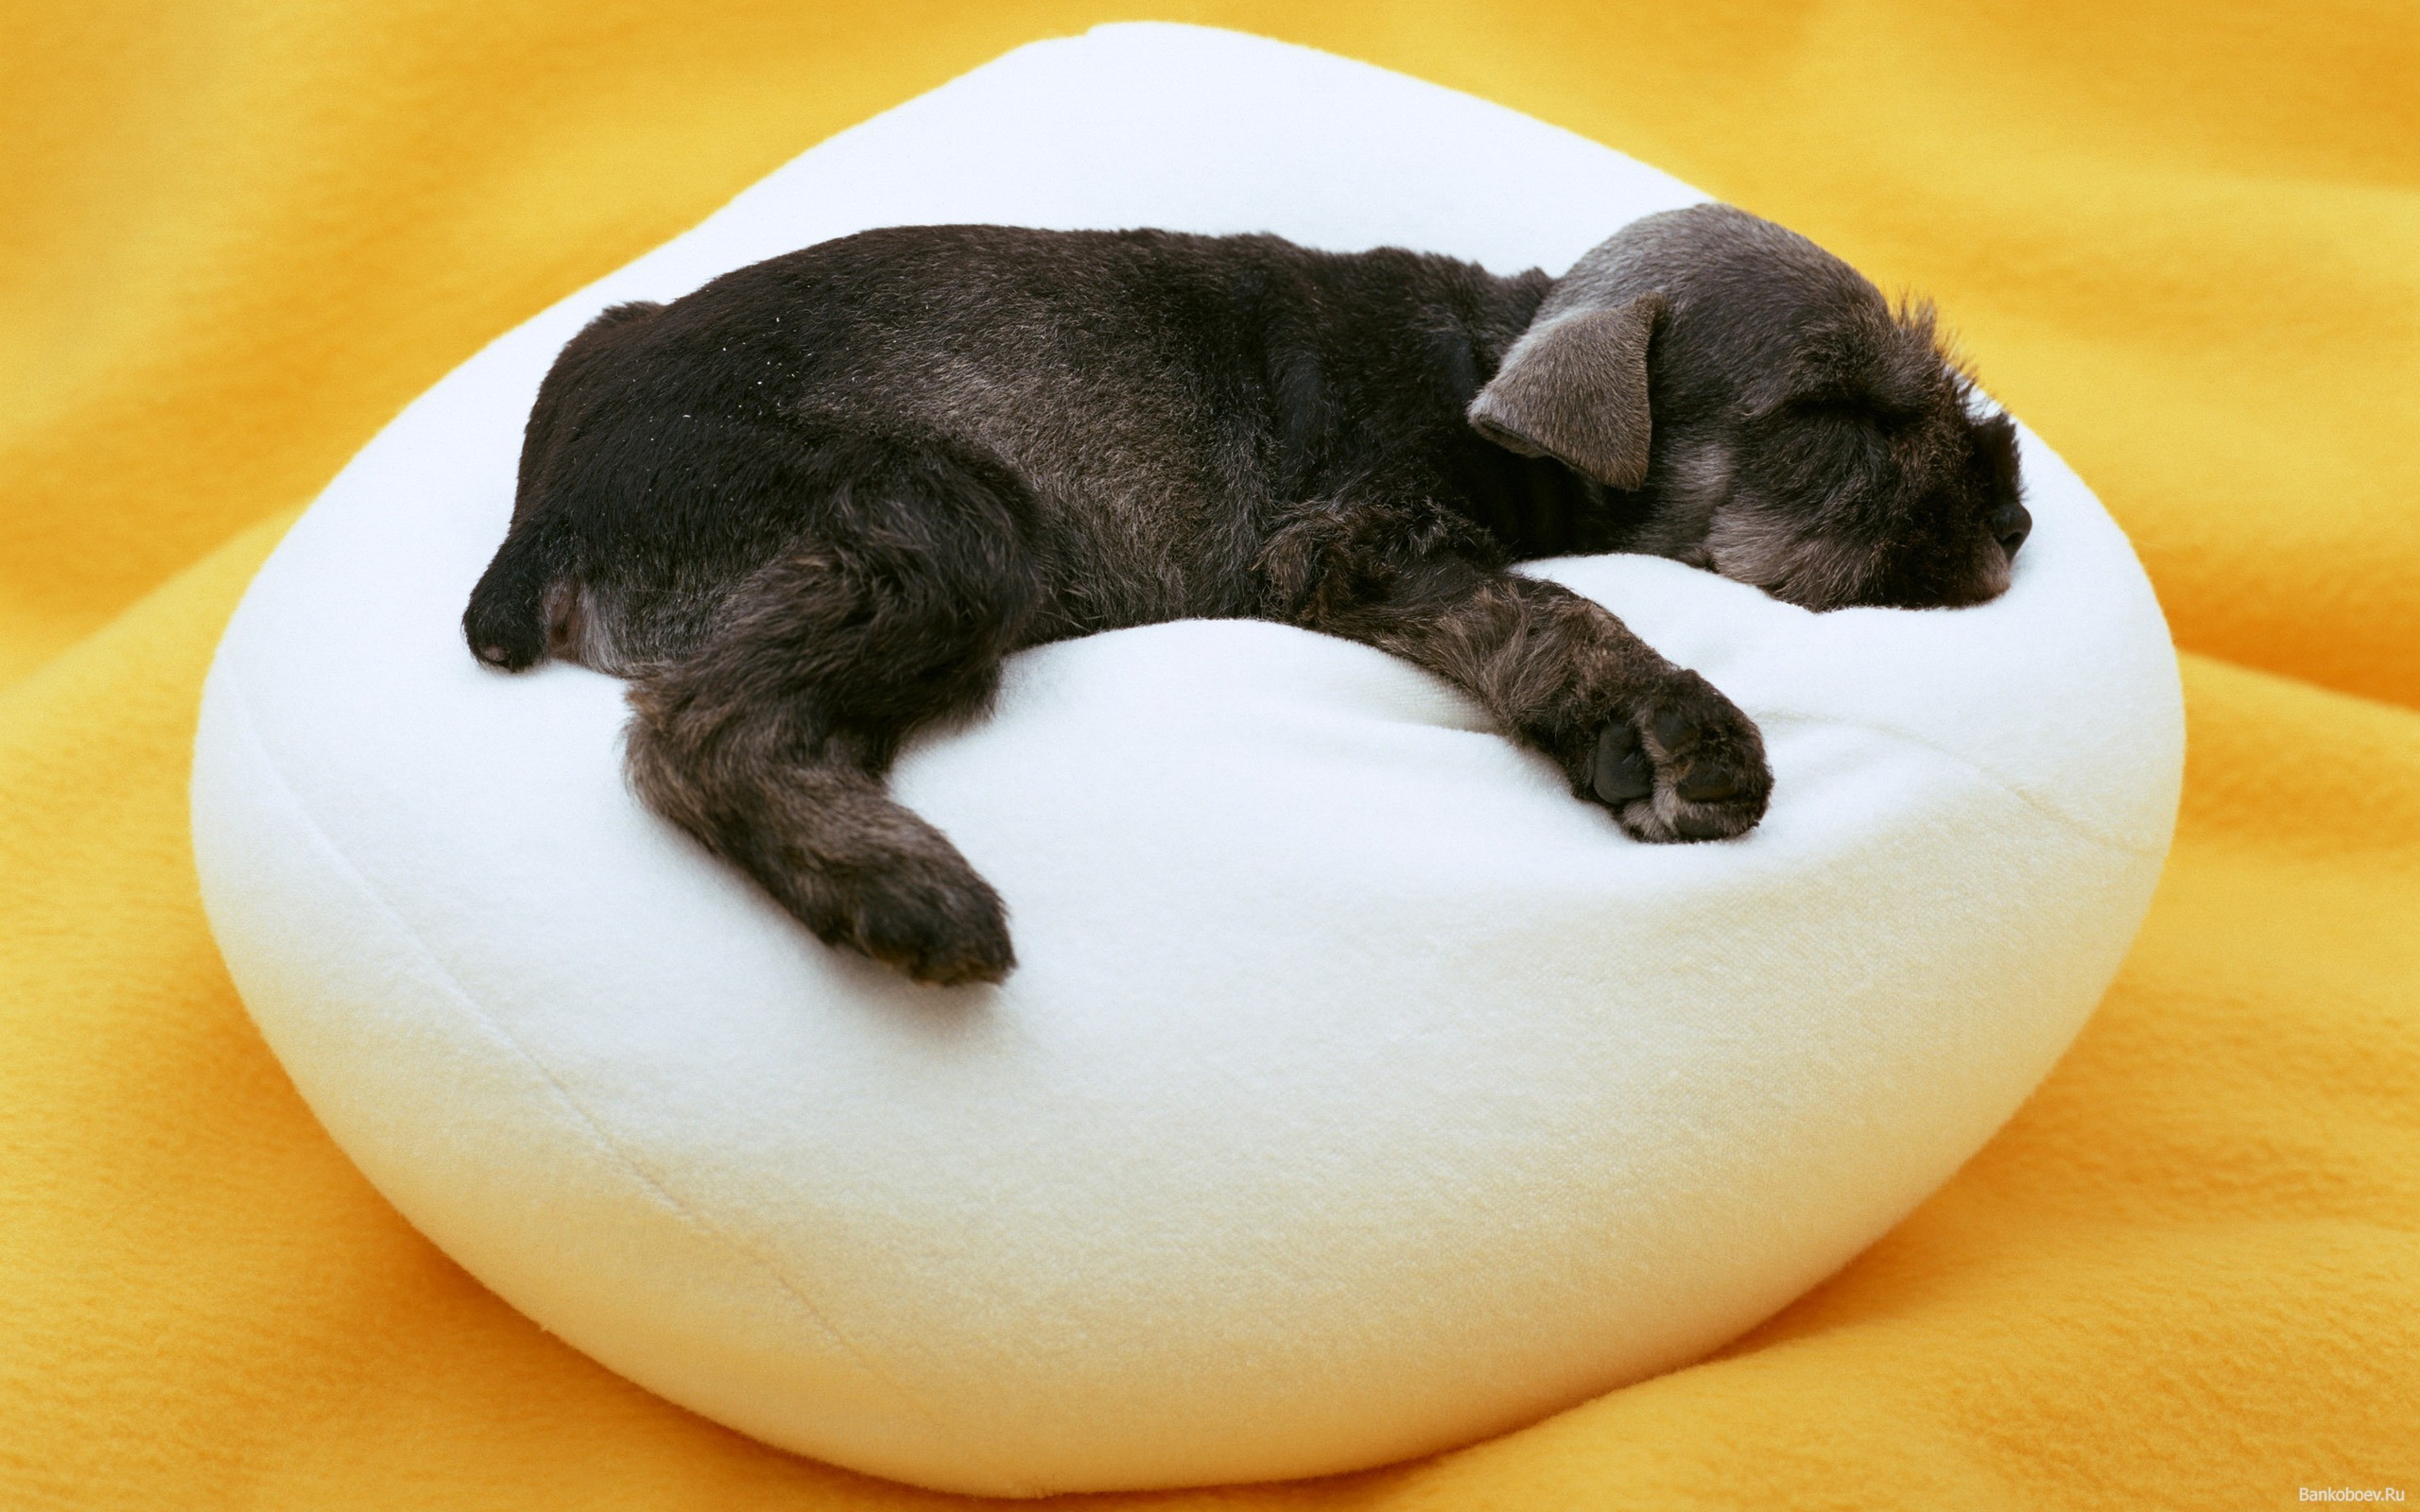 Puppy sleep pillow